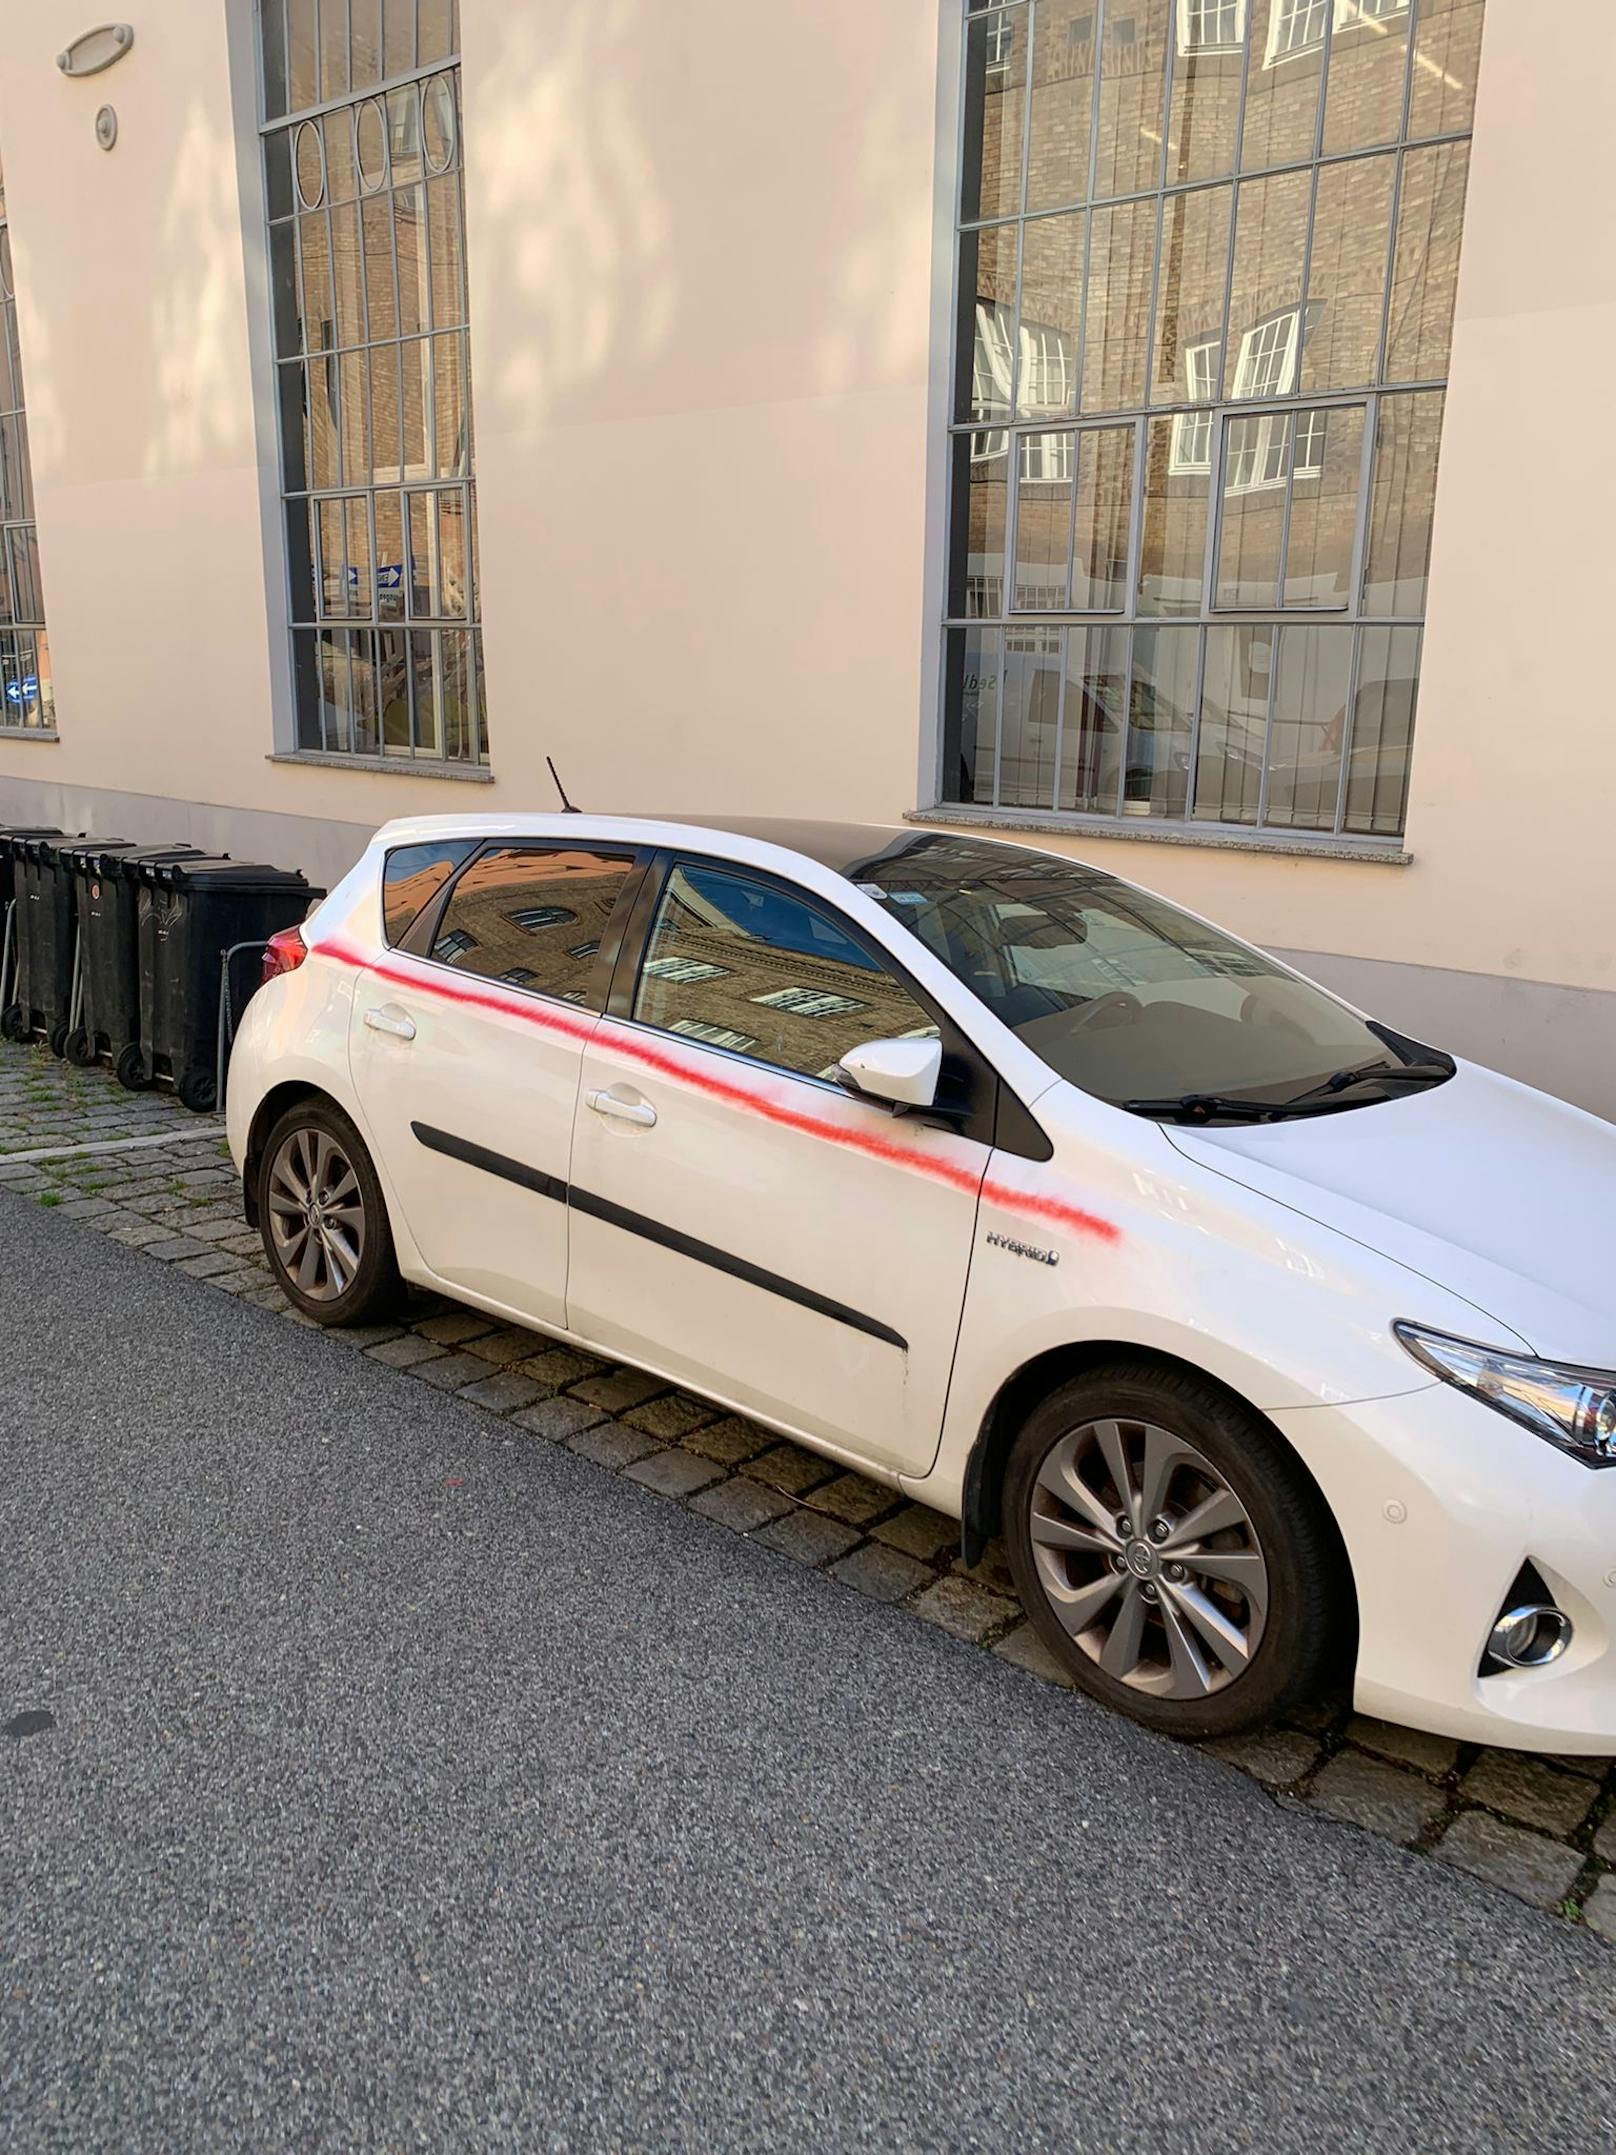 in Wien-Döbling beschmierten unbekannte mehrere Autos.